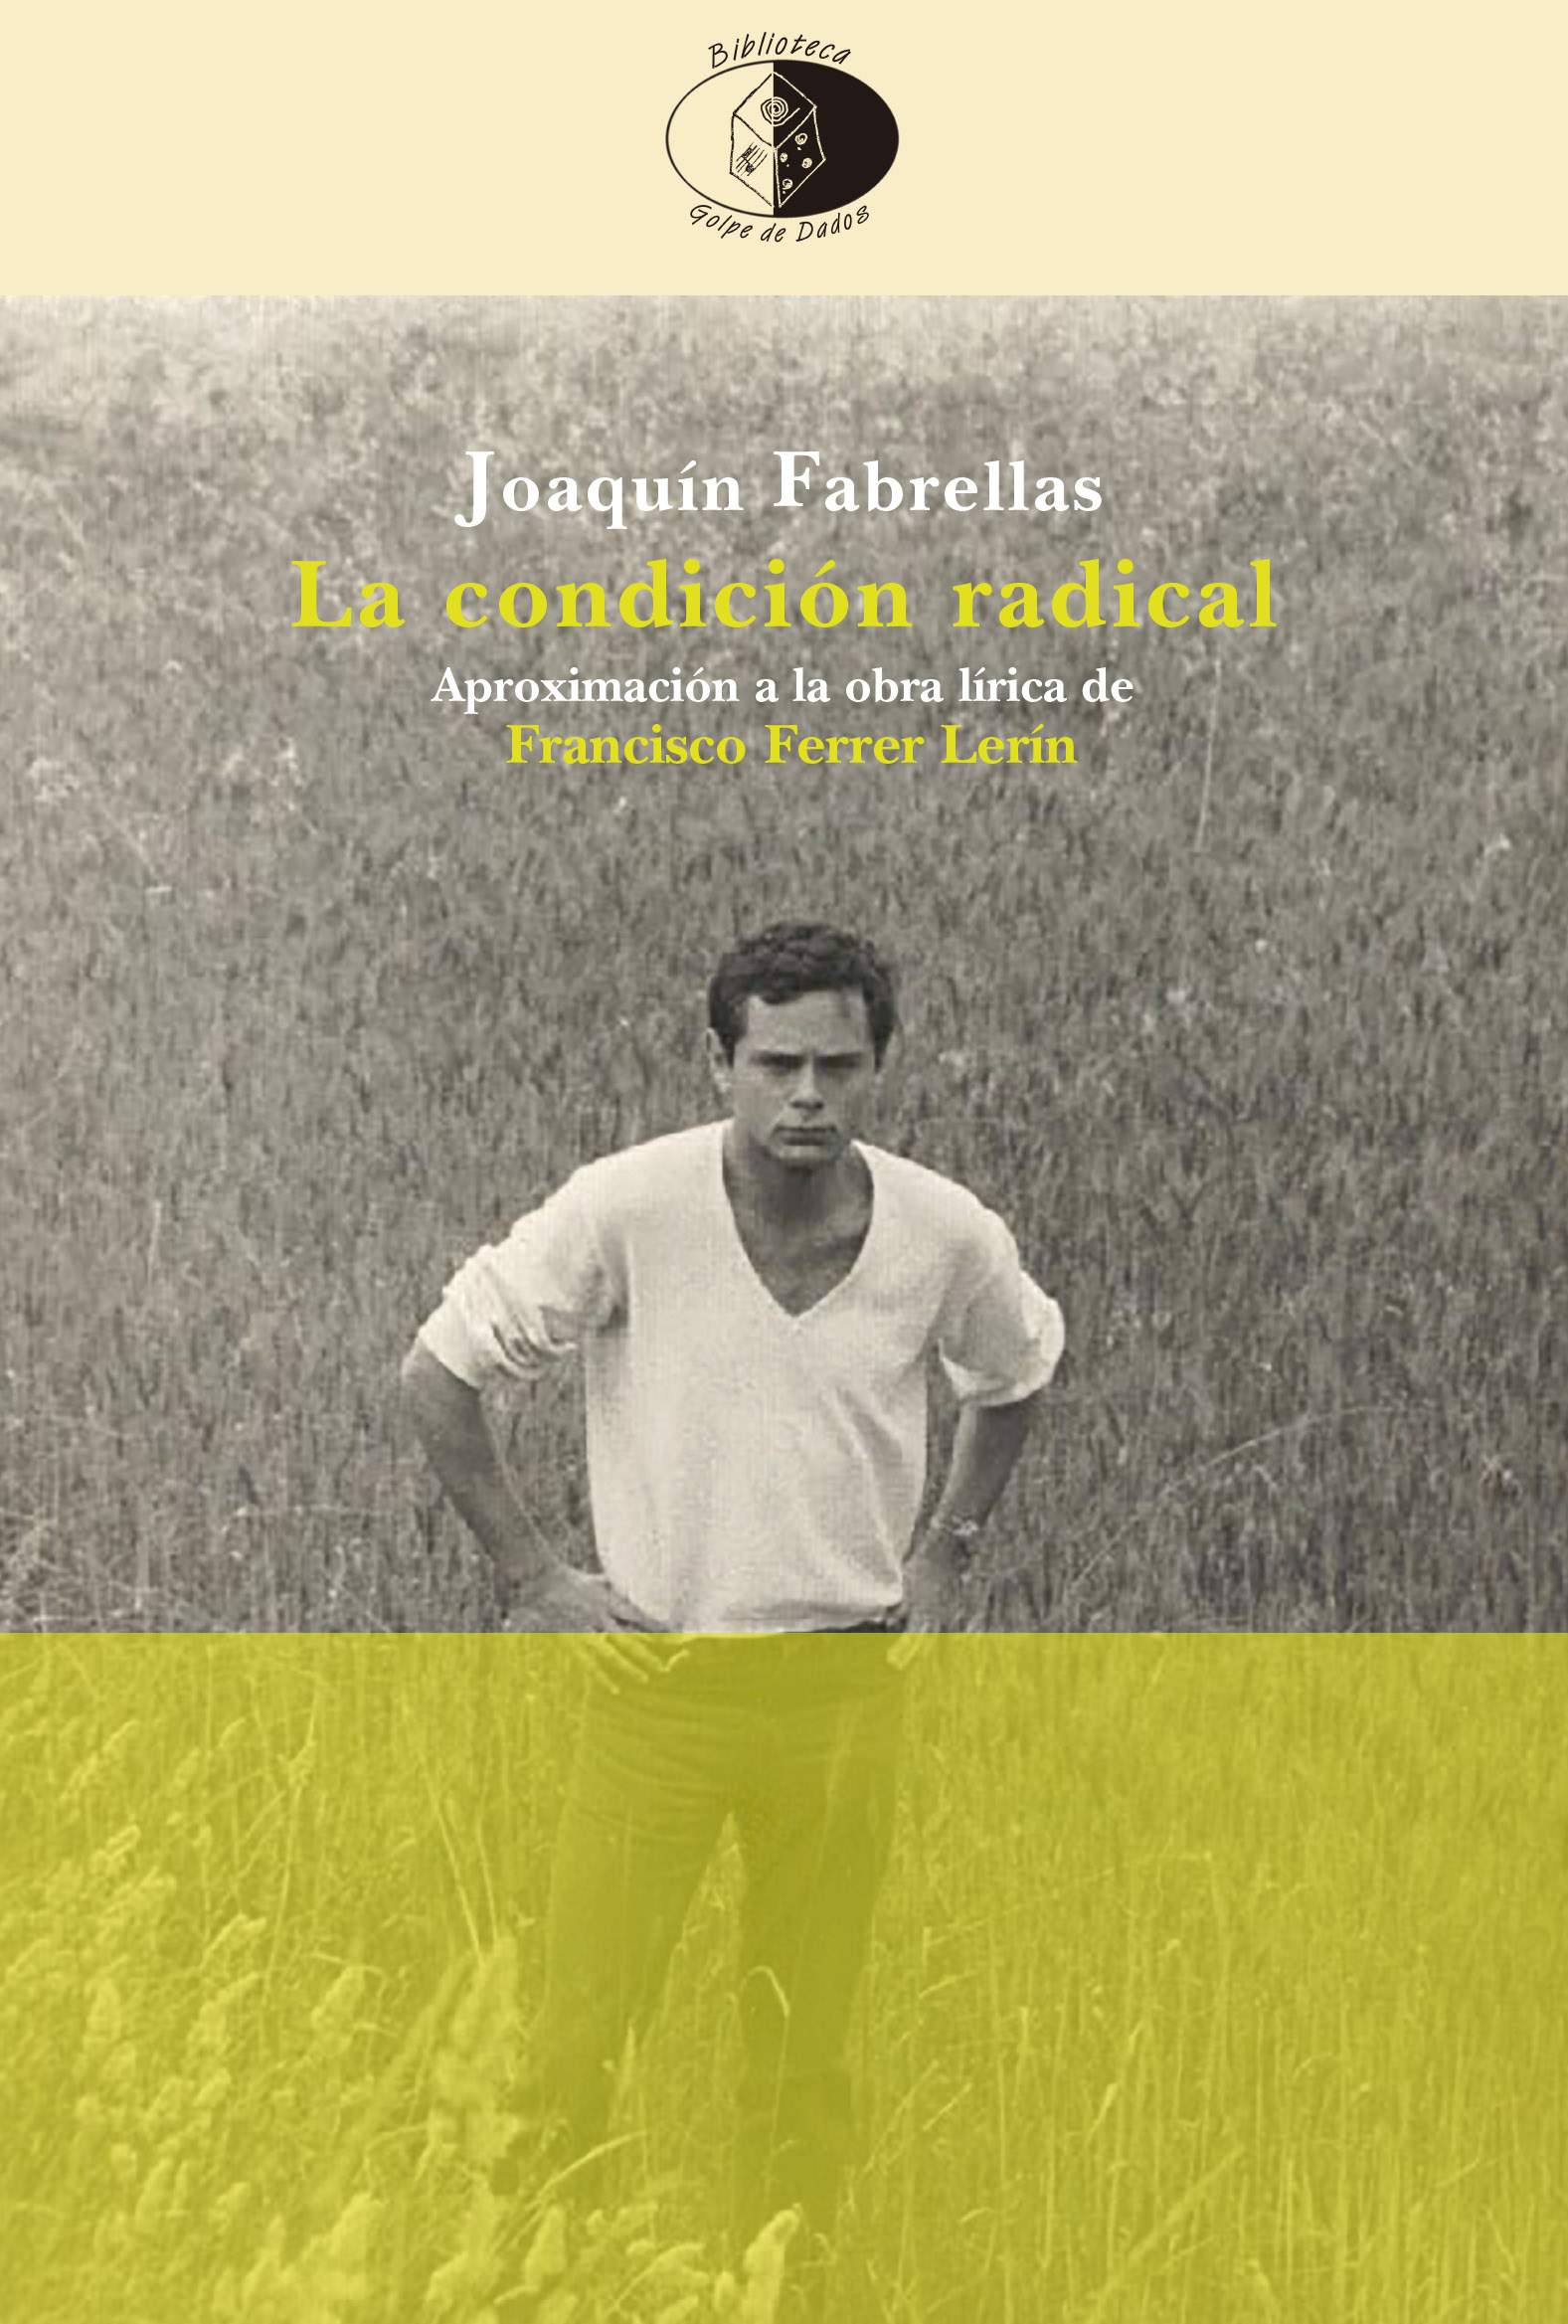 Joaquín Fabrellas entrevista a Ferrer Lerín para la revista Publisher’s Weekly